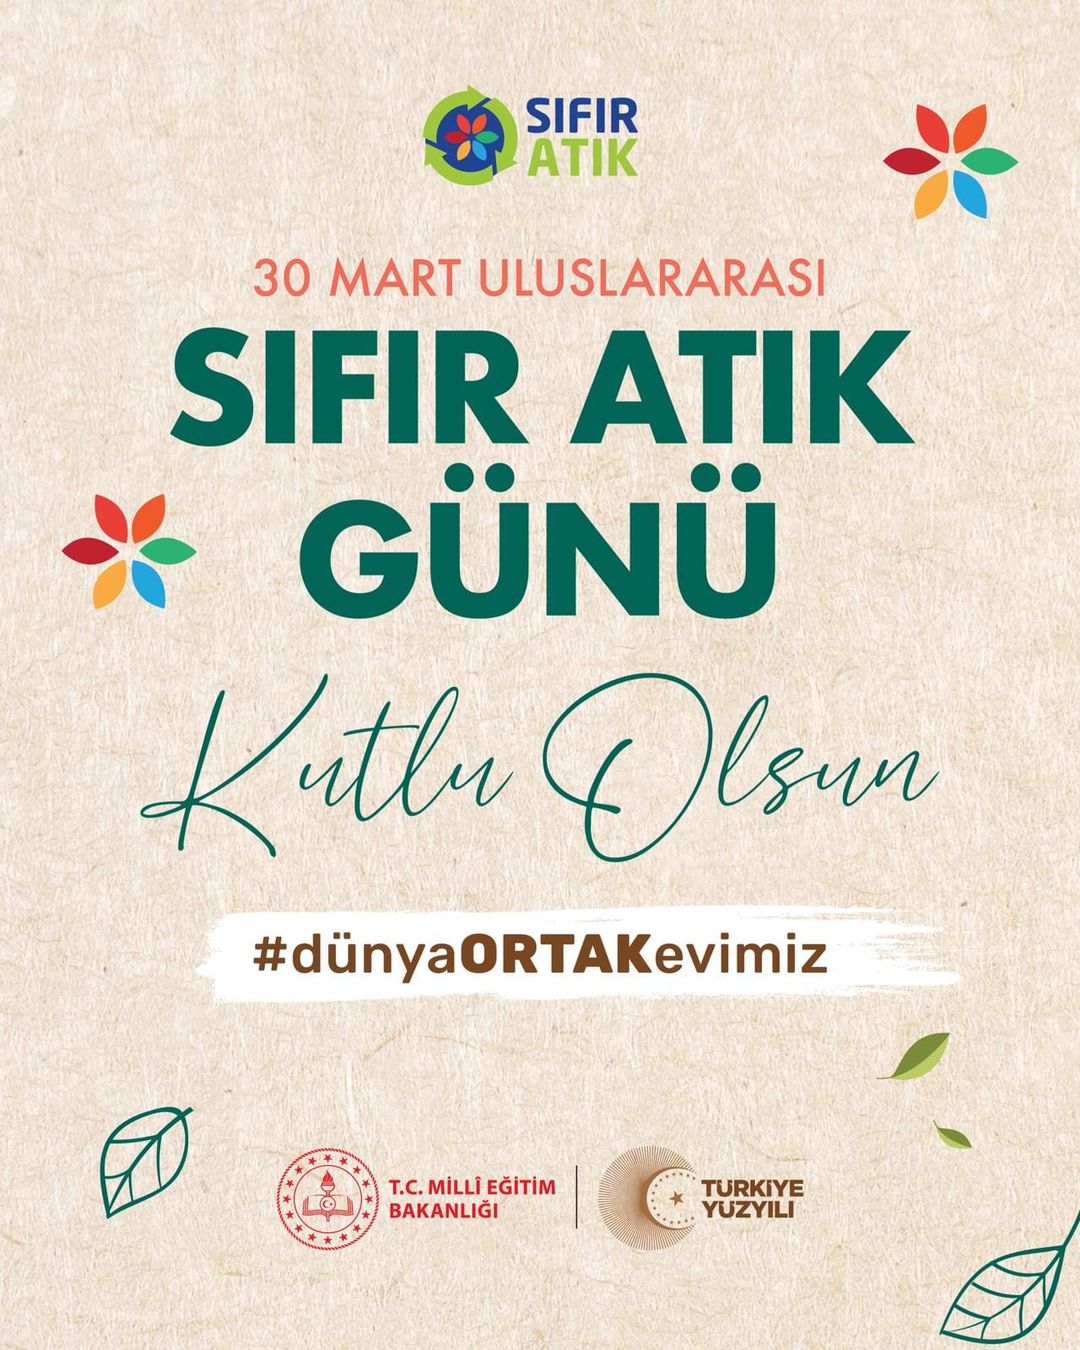 Eskişehir, Uluslararası Sıfır Atık Günü'nde çevreci bir harekete öncülük ediyor.